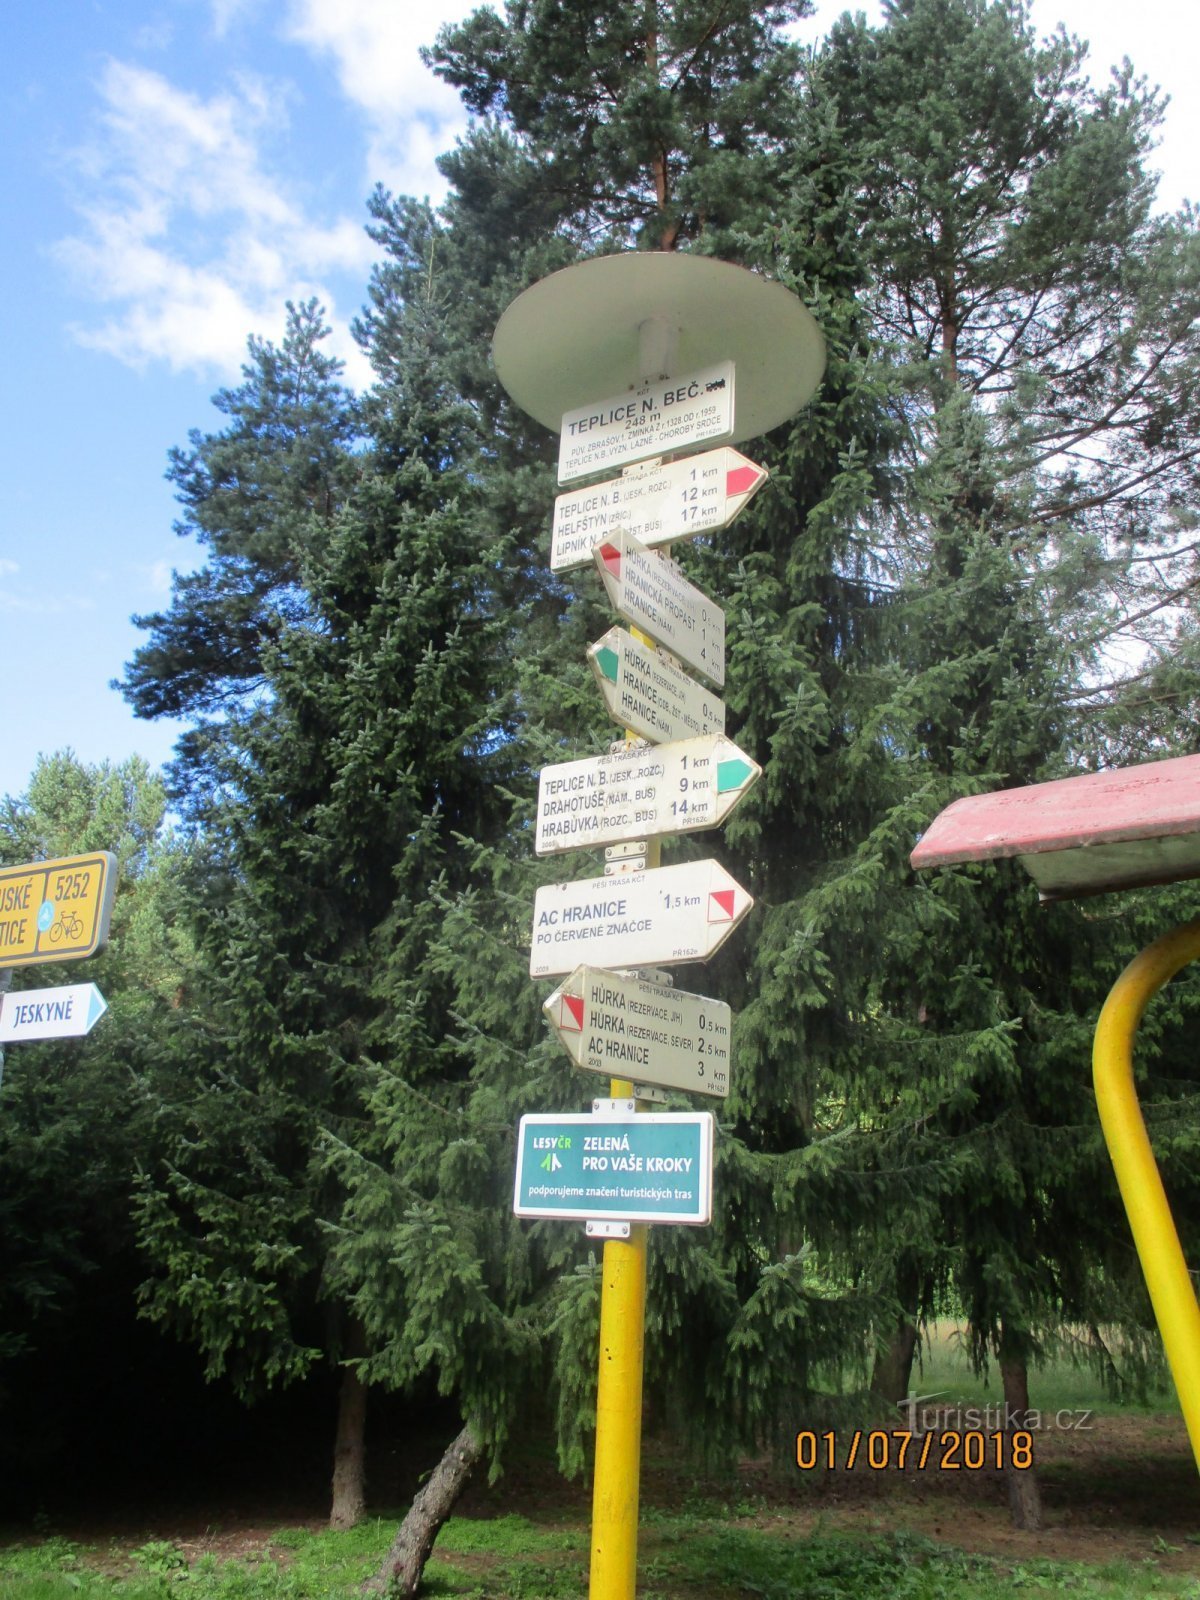 Теплице-над-Бечвоу - железная дорога (велосипедный туристический указатель)